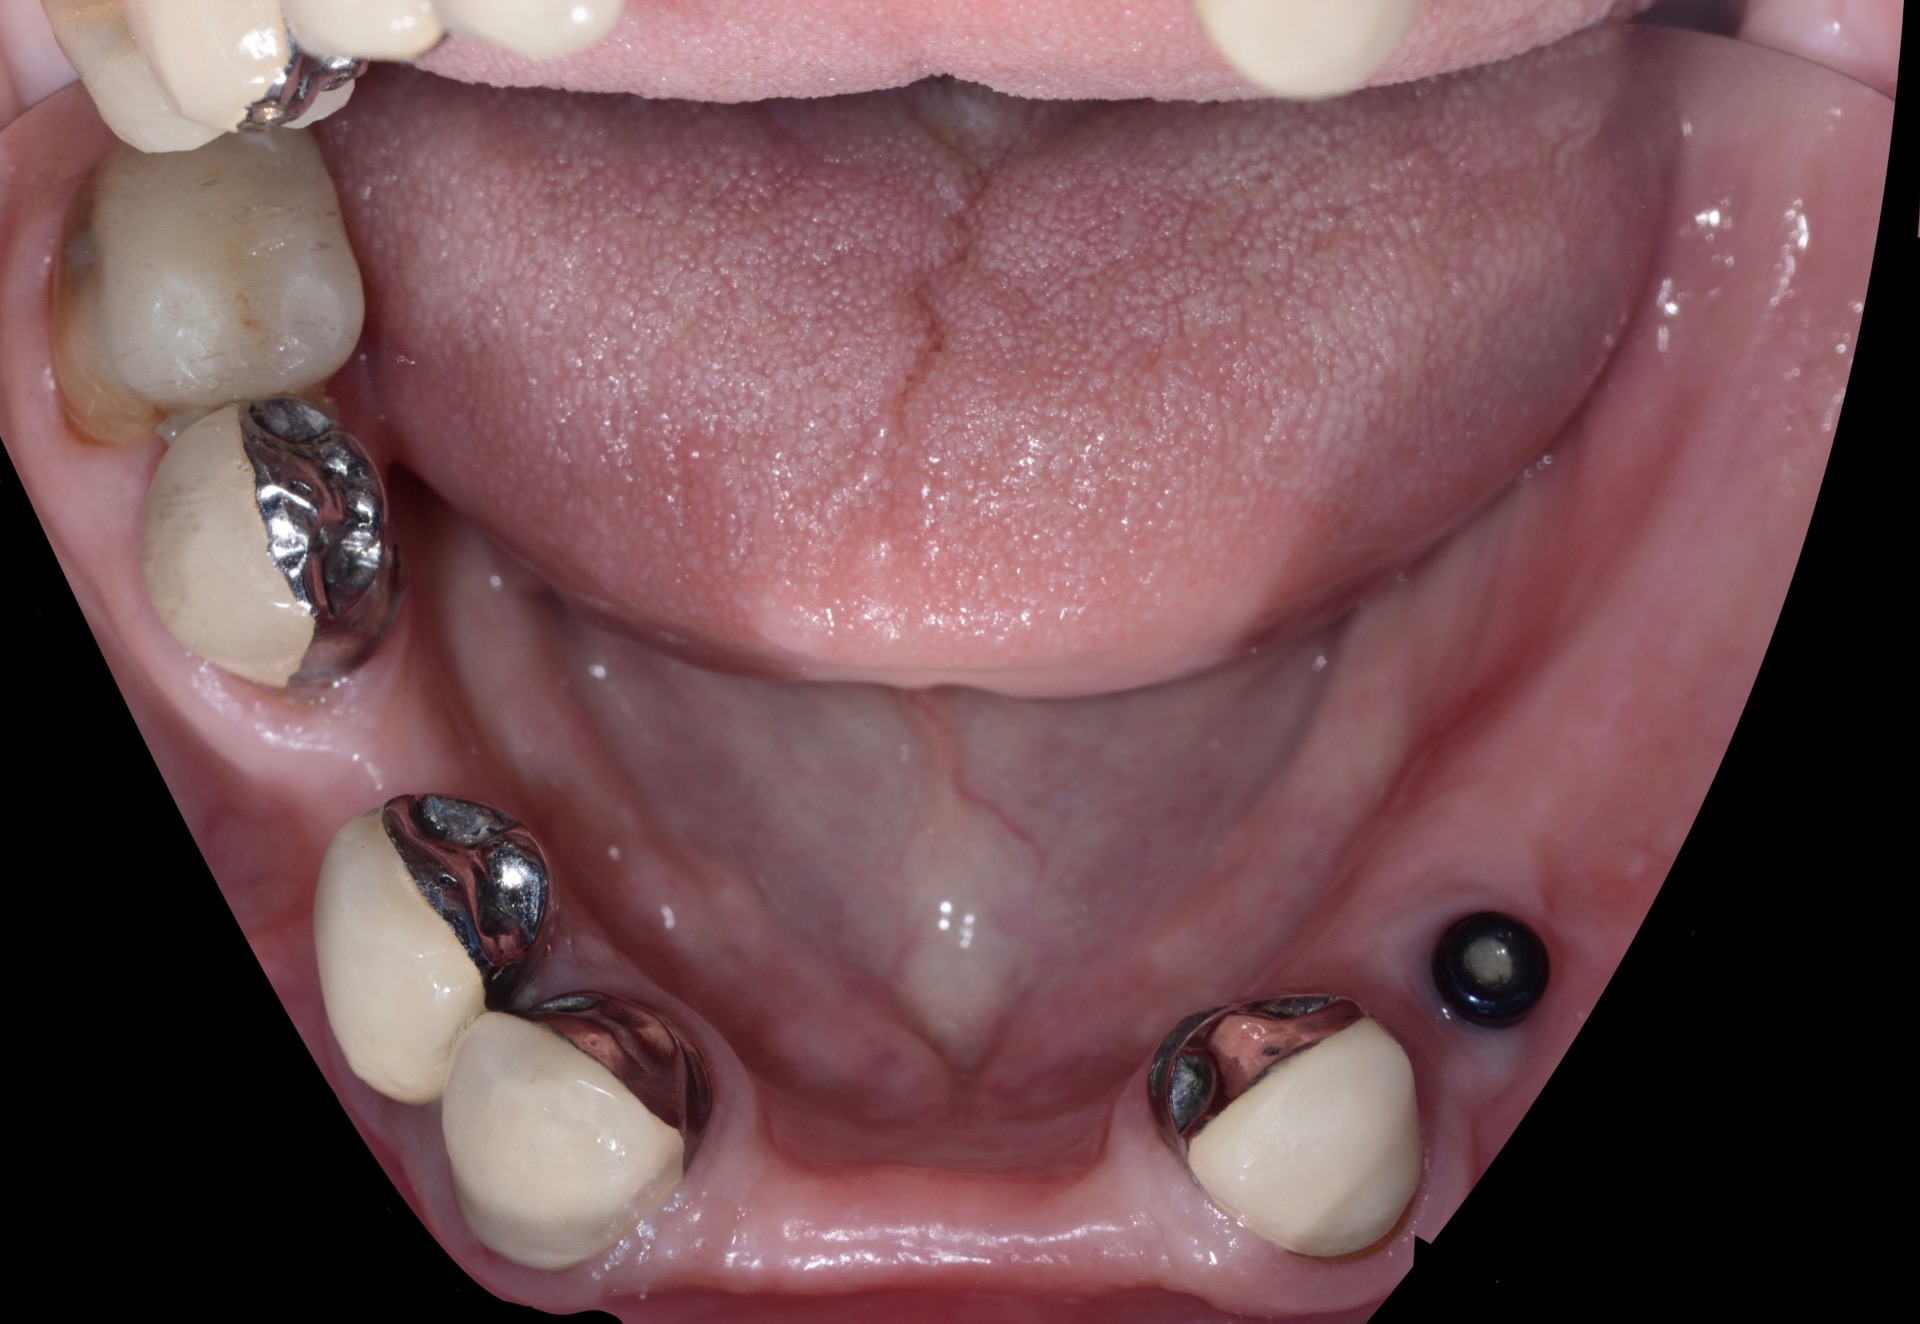 Τελική κατάσταση - Μασητική άποψη κάτω γνάθου (χωρίς την μερική οδοντοστοιχία τοποθετημένη.